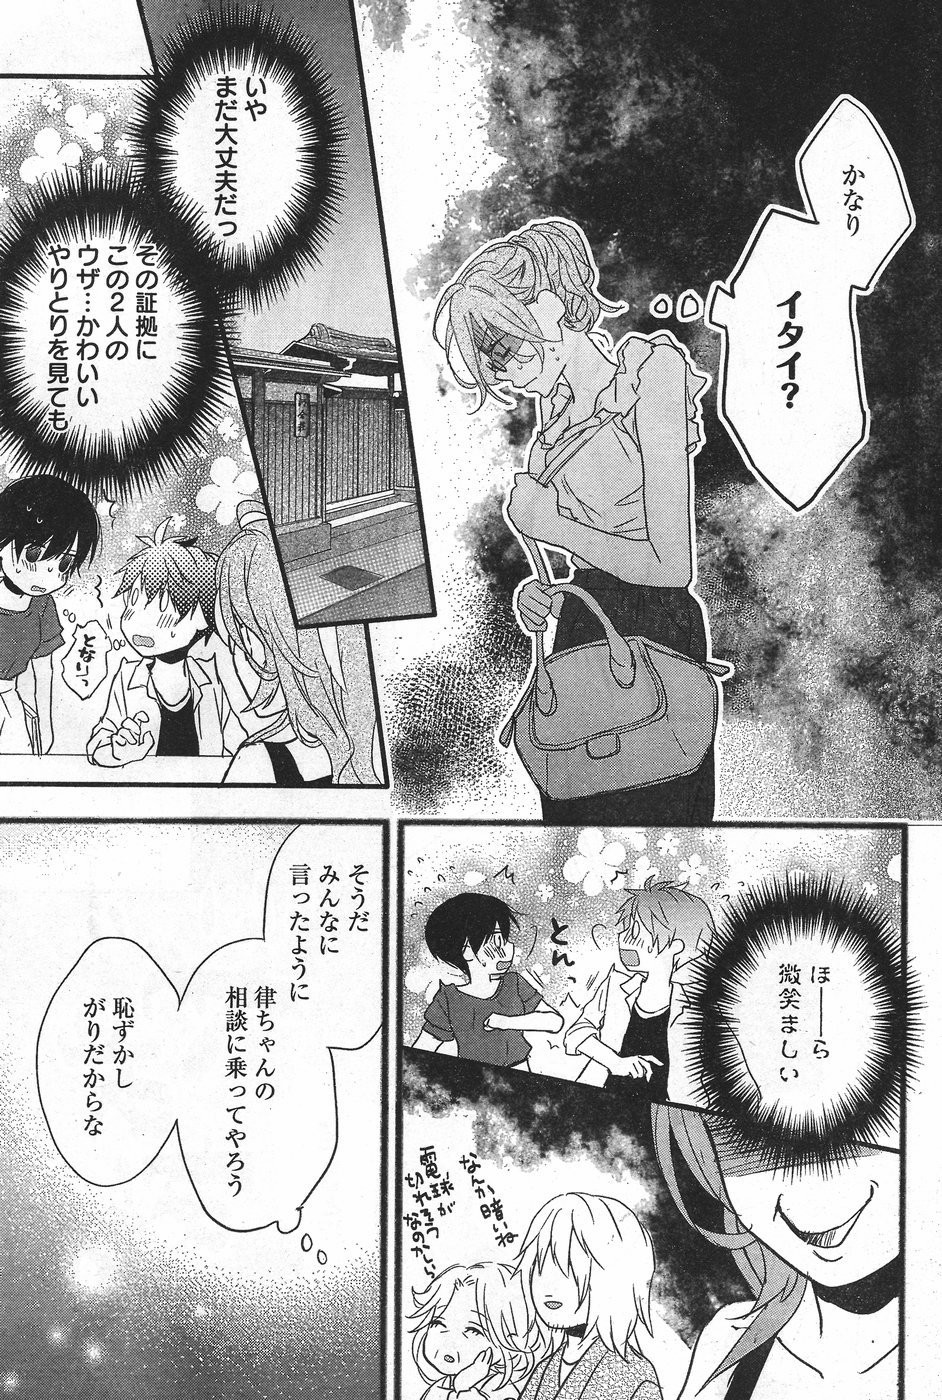 Bokura wa Minna Kawaisou - Chapter 71 - Page 13